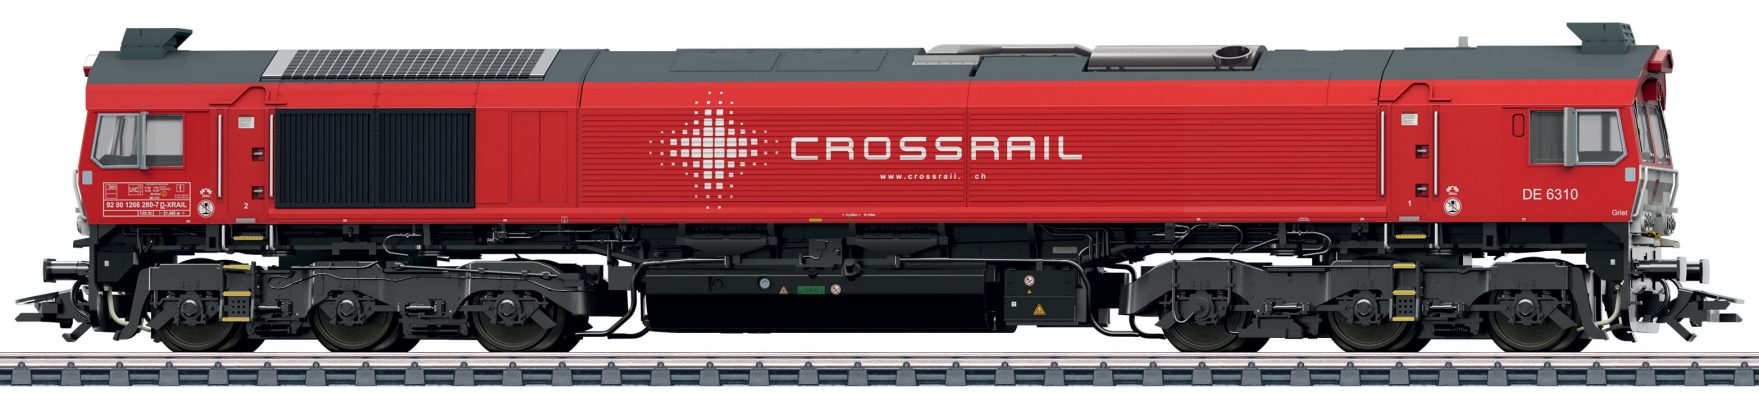 H0 39065 Crossrail Class 77 DE 6310_Maerklin_1 21